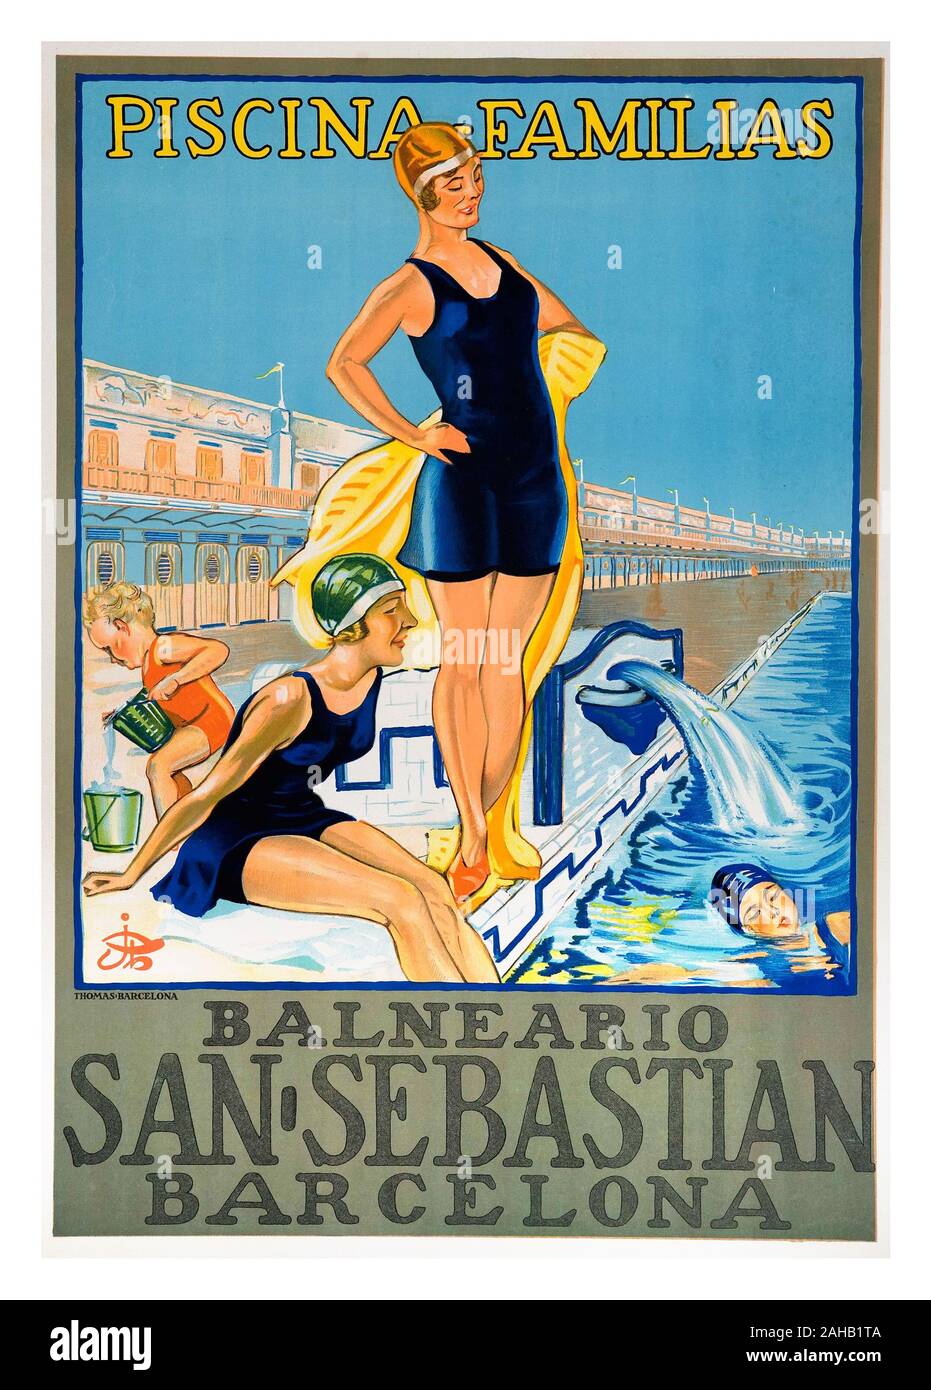 Vintage des années 1900, l'espagnol affiche Voyage Balneario San Sebastian Espagne Barcelone Piscina Familias Banque D'Images